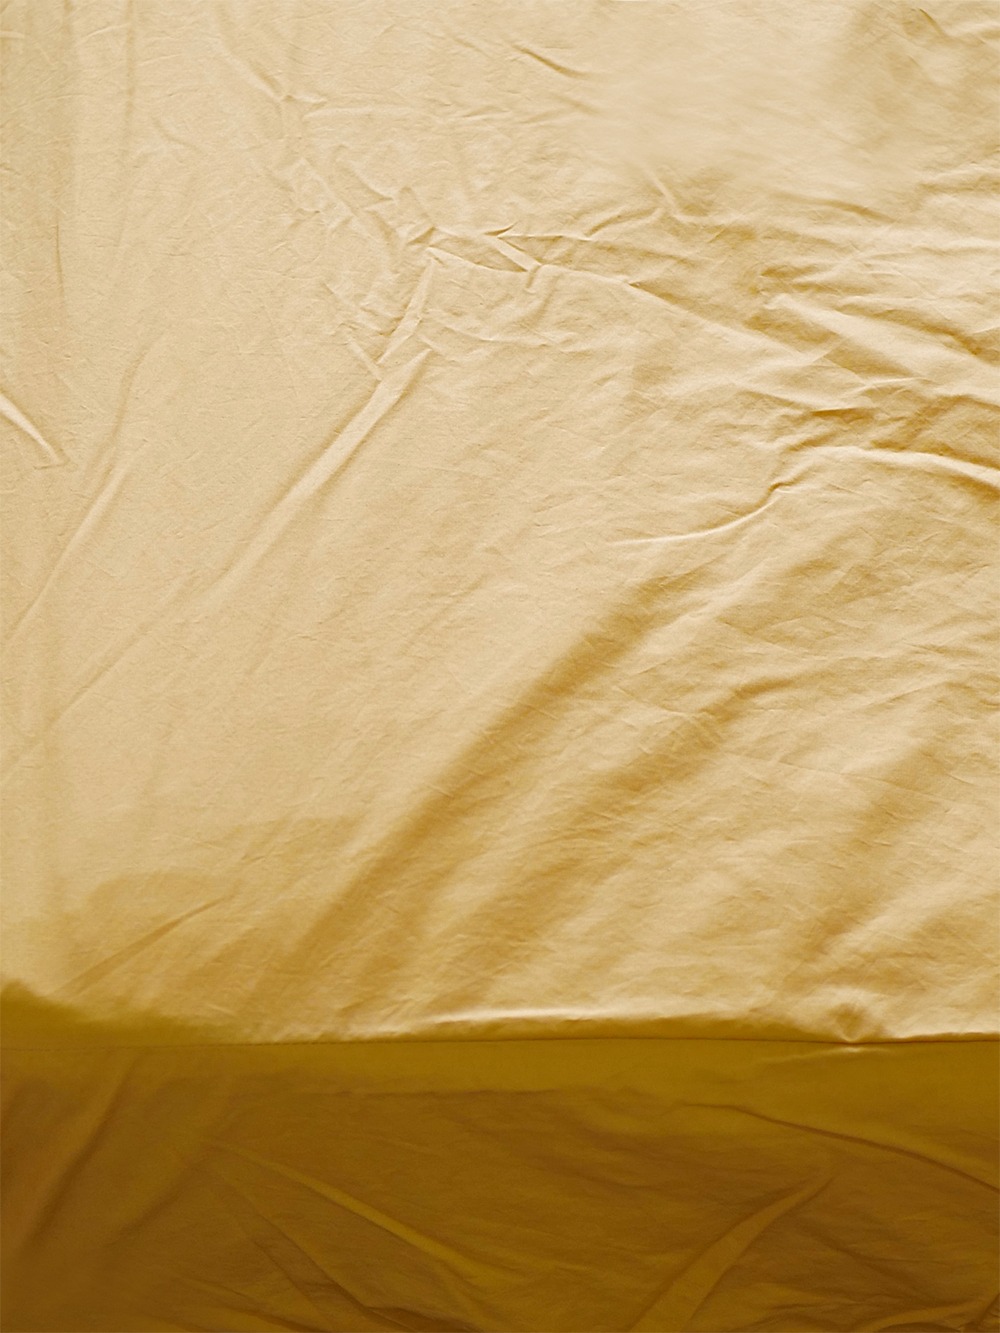 Honey Yellow mattress cover